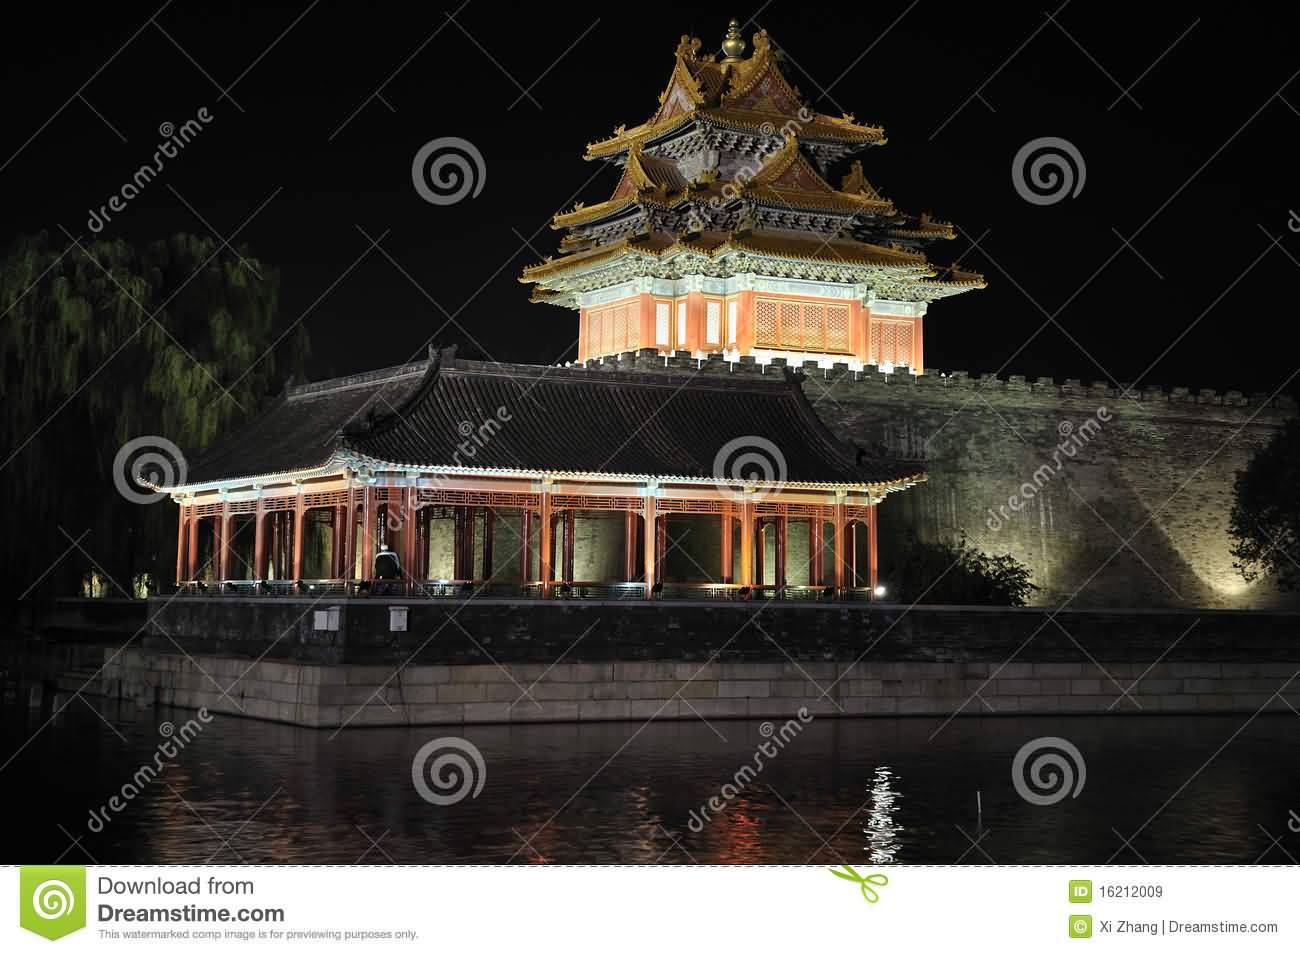 Beijing Forbidden City Night View